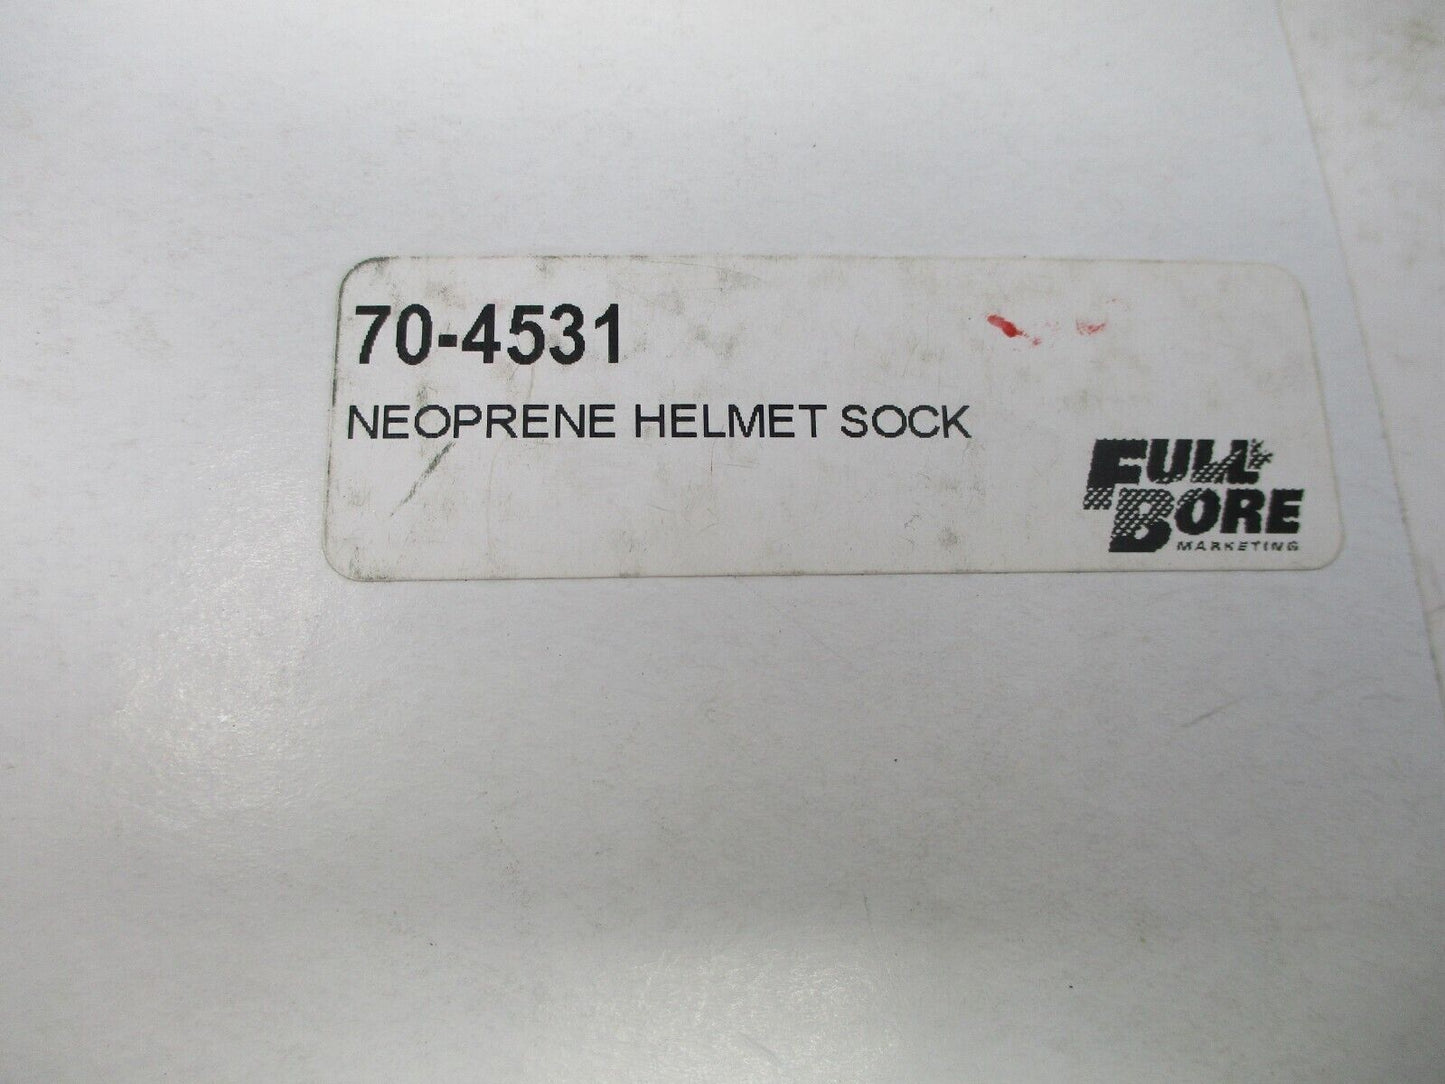 Neoprene Helmet Sock 70-4531